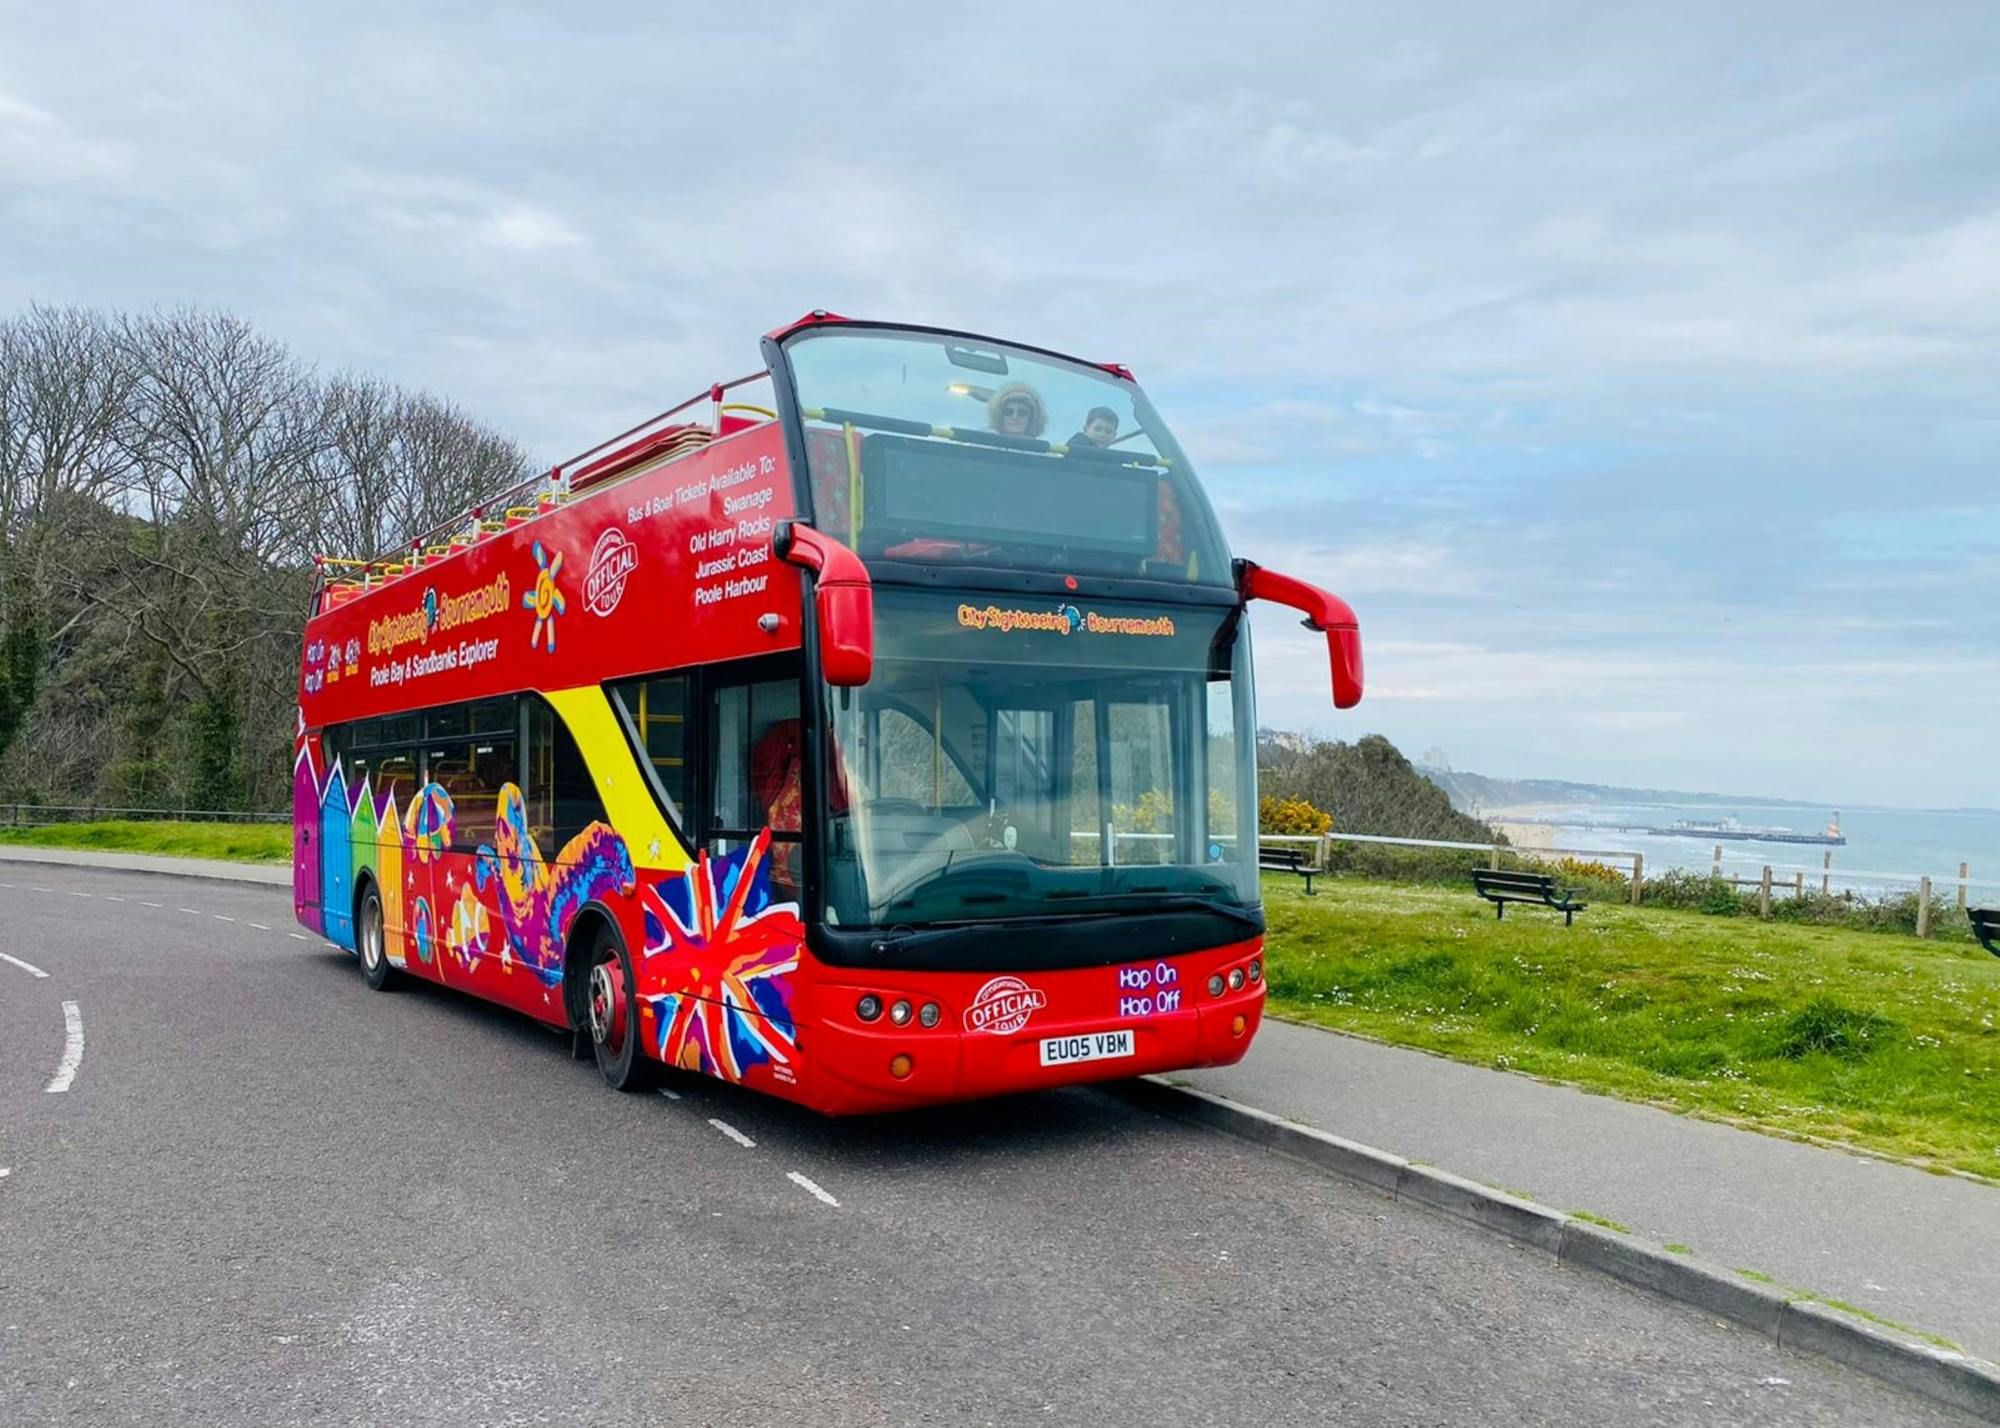 Excursão turística em ônibus panorâmico pela cidade de Bournemouth